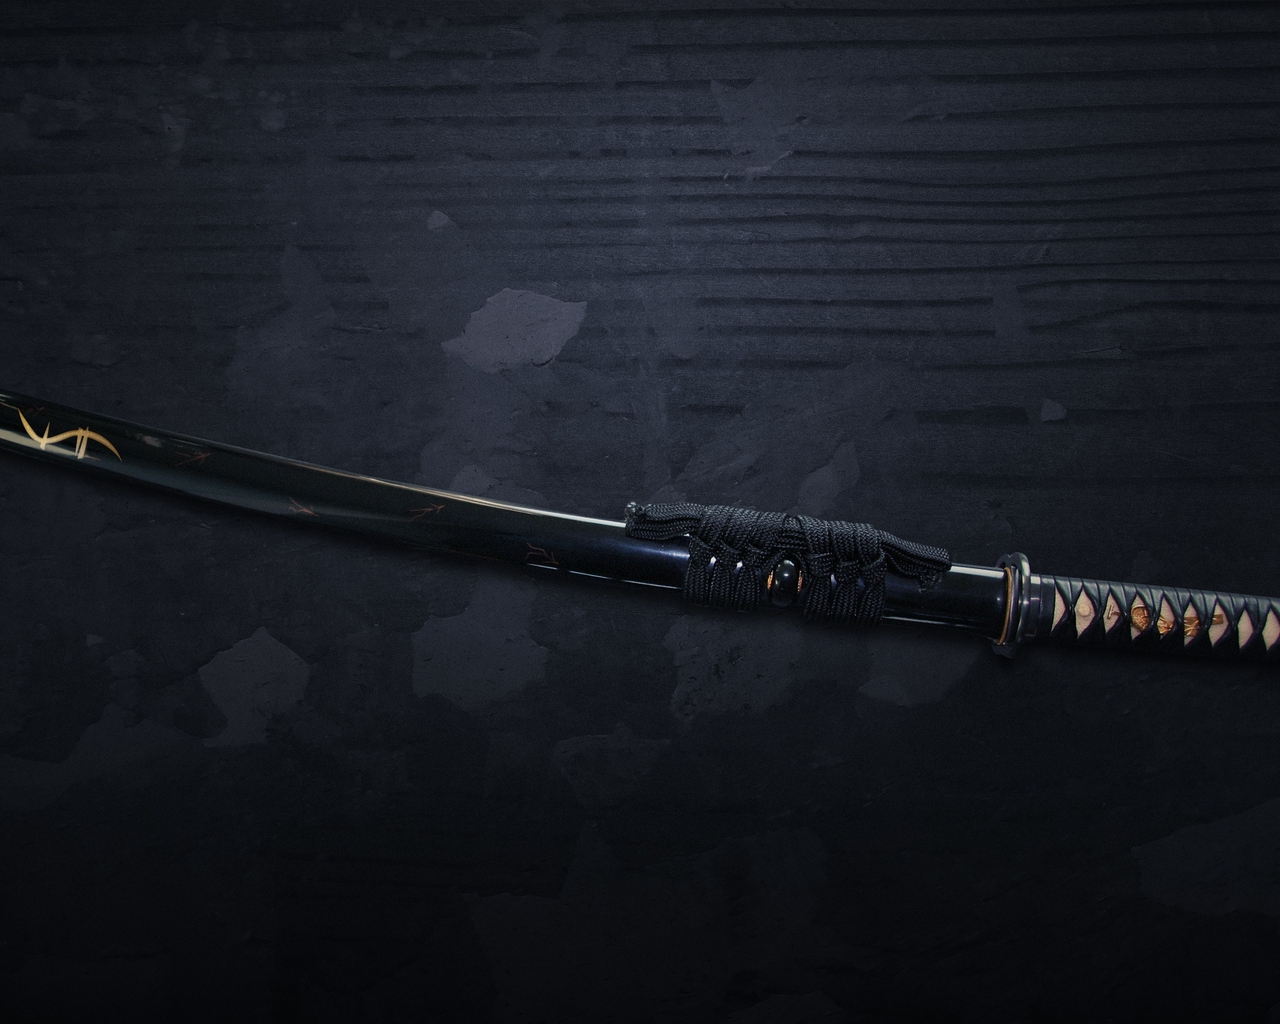 Картинка: Катана, katana, меч, sword, холодное оружие, самурайский, ножны, сая